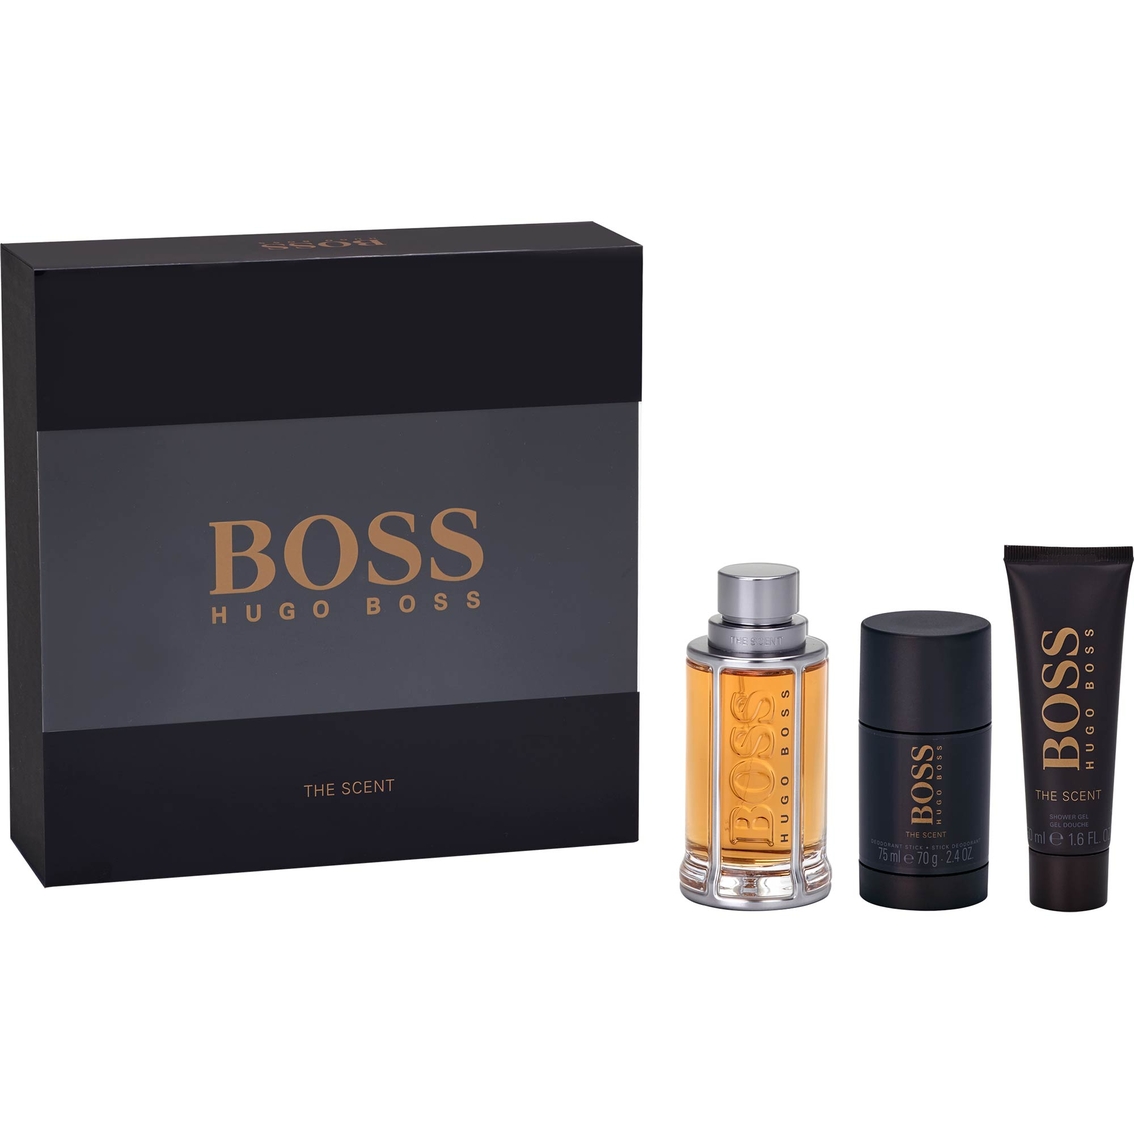 hugo boss perfume gift set for him